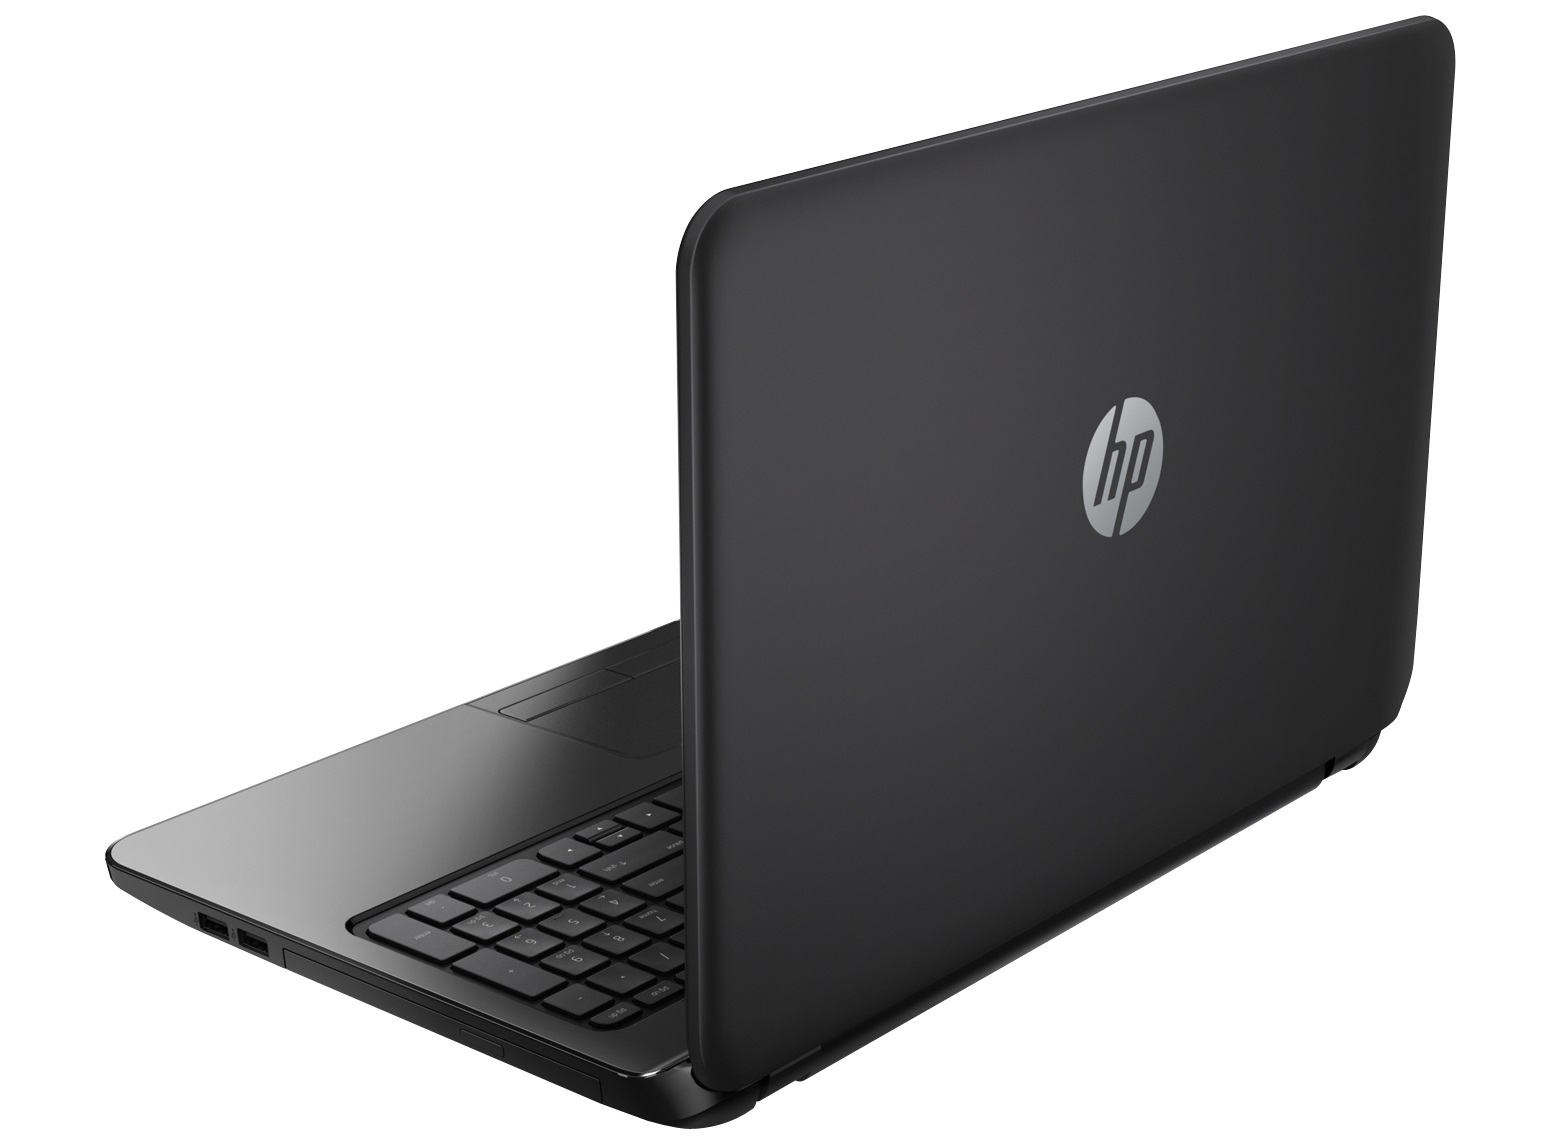 Laptop HP 240 G2 Intel i3 de 3a. Geração